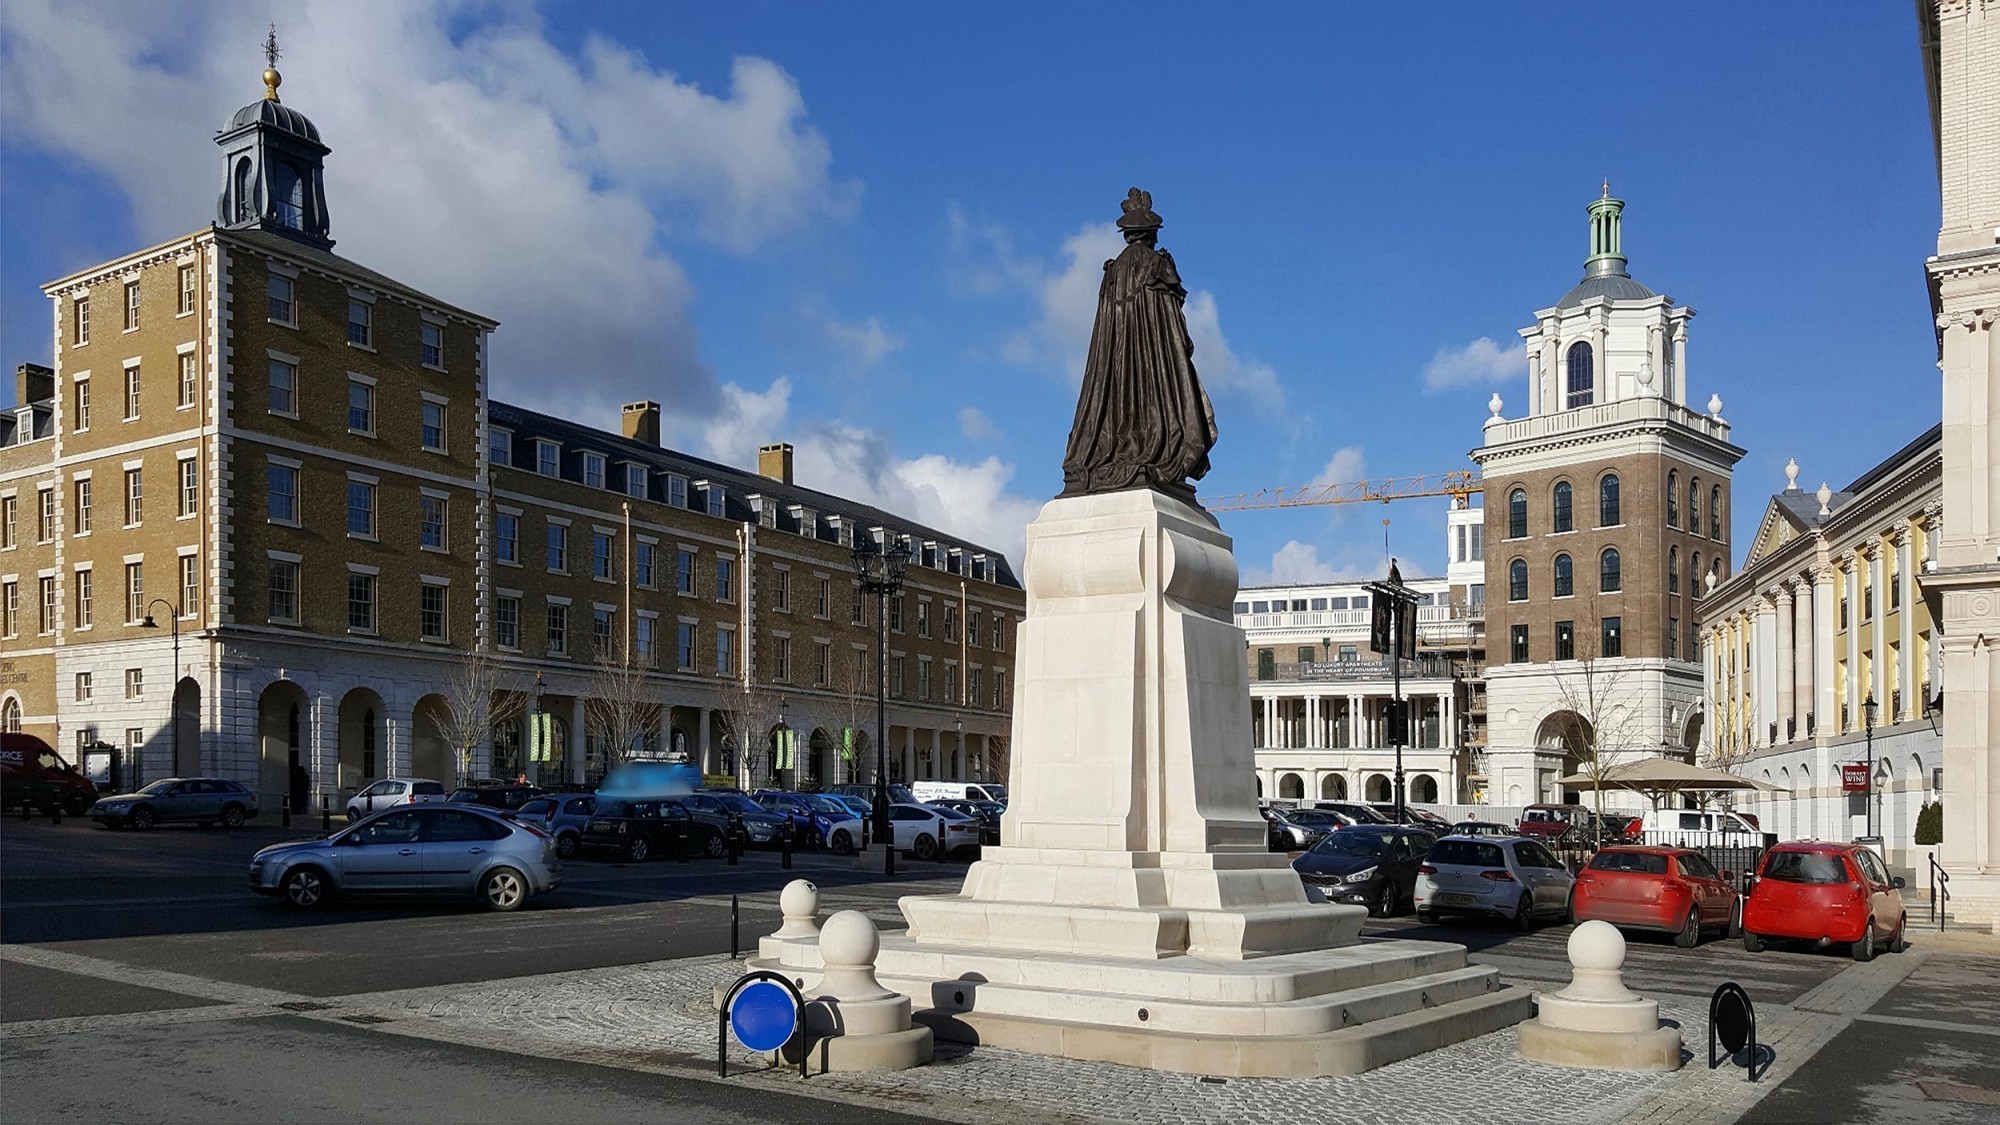 Queen Mother Square à Poundbury : la statue représente la reine mère et a été inaugurée par le prince Charles en 2017.